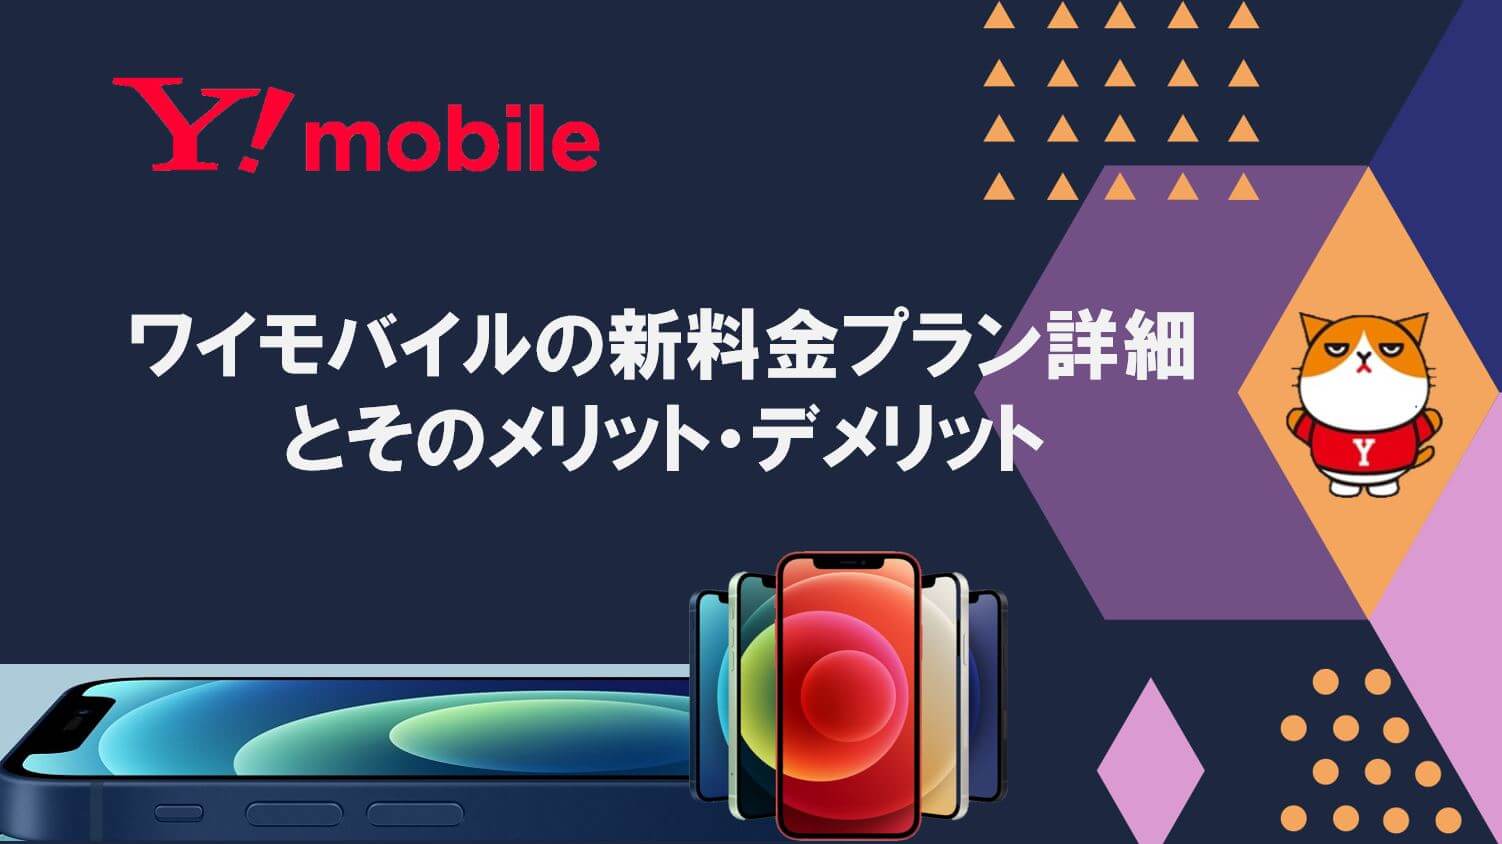 プラン 新 y モバイル Y!mobileの新プラン「シンプルS／M／L」は2月18日から提供 「おうち割」「家族割引」の増額など条件変更も